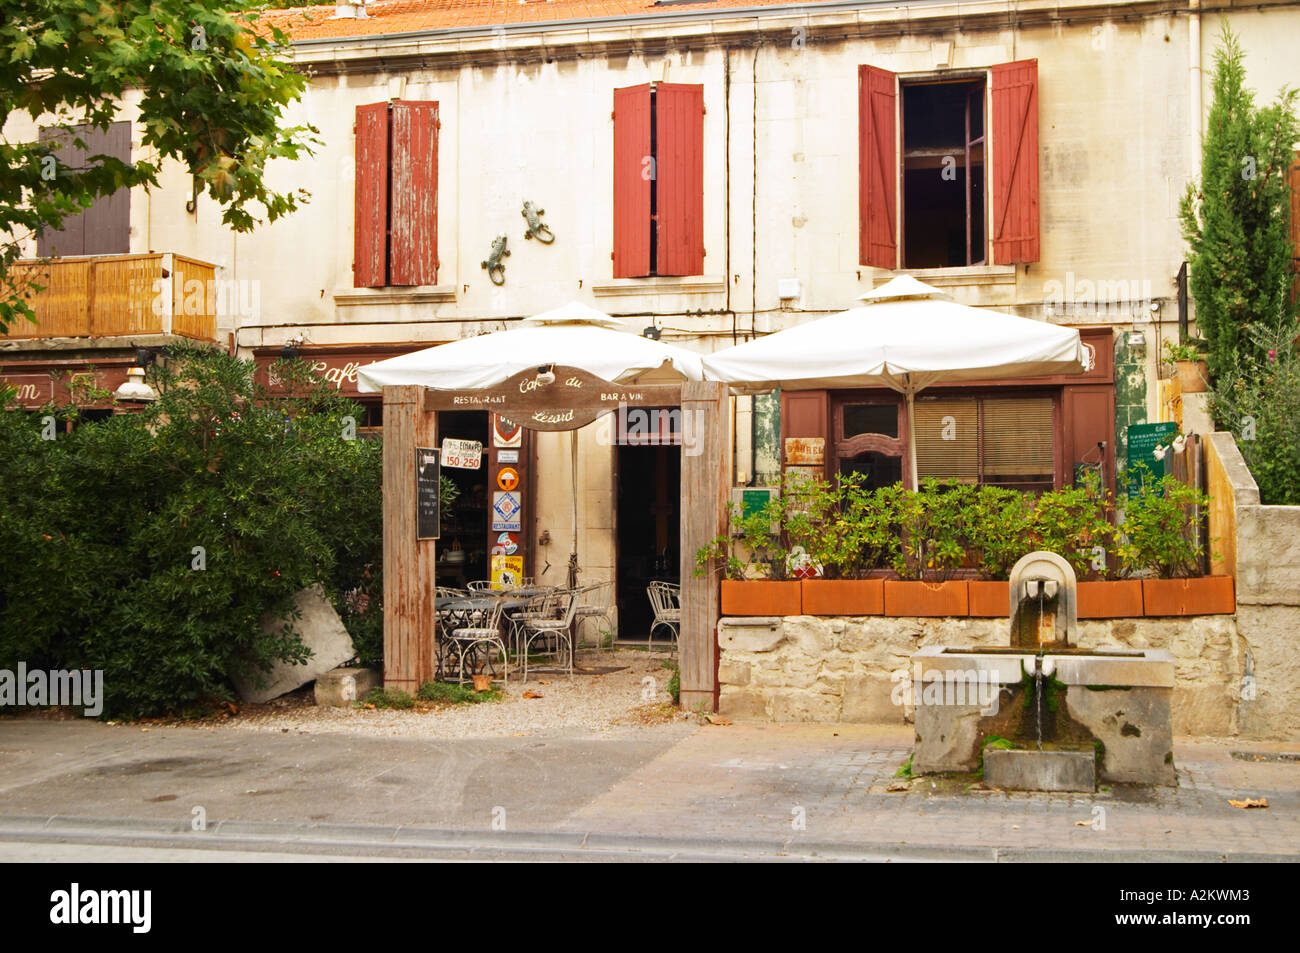 A restaurant Cafe du Lezard. Saint Remy Rémy de Provence, Bouches du Rhone, France, Europe Stock Photo